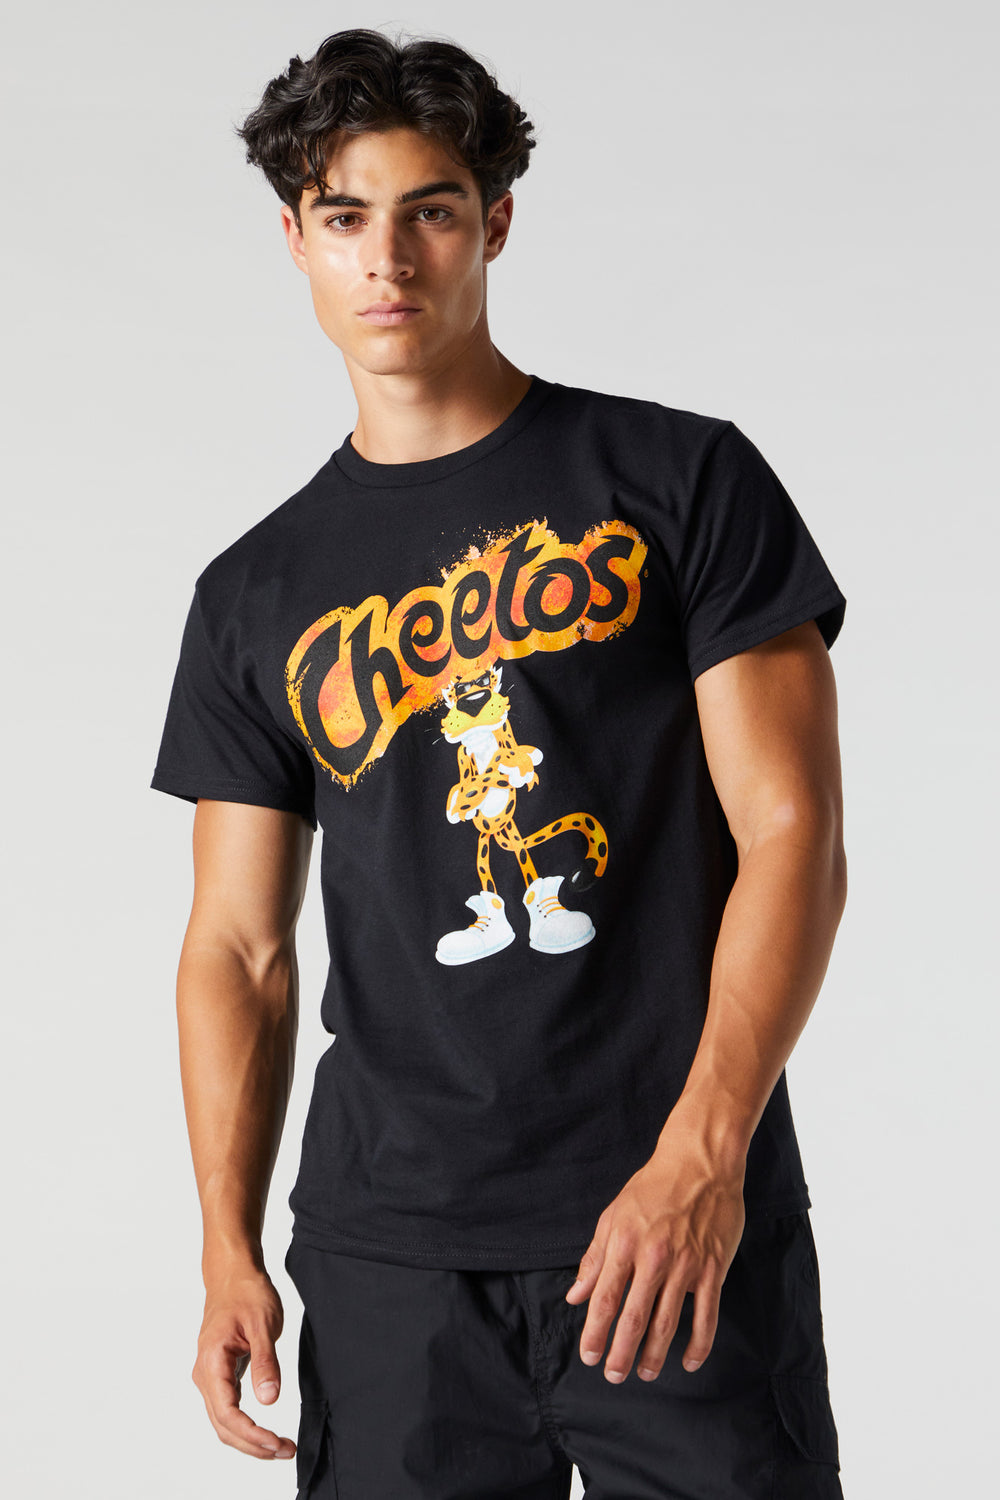 Cheetos Graphic T-Shirt Cheetos Graphic T-Shirt 1